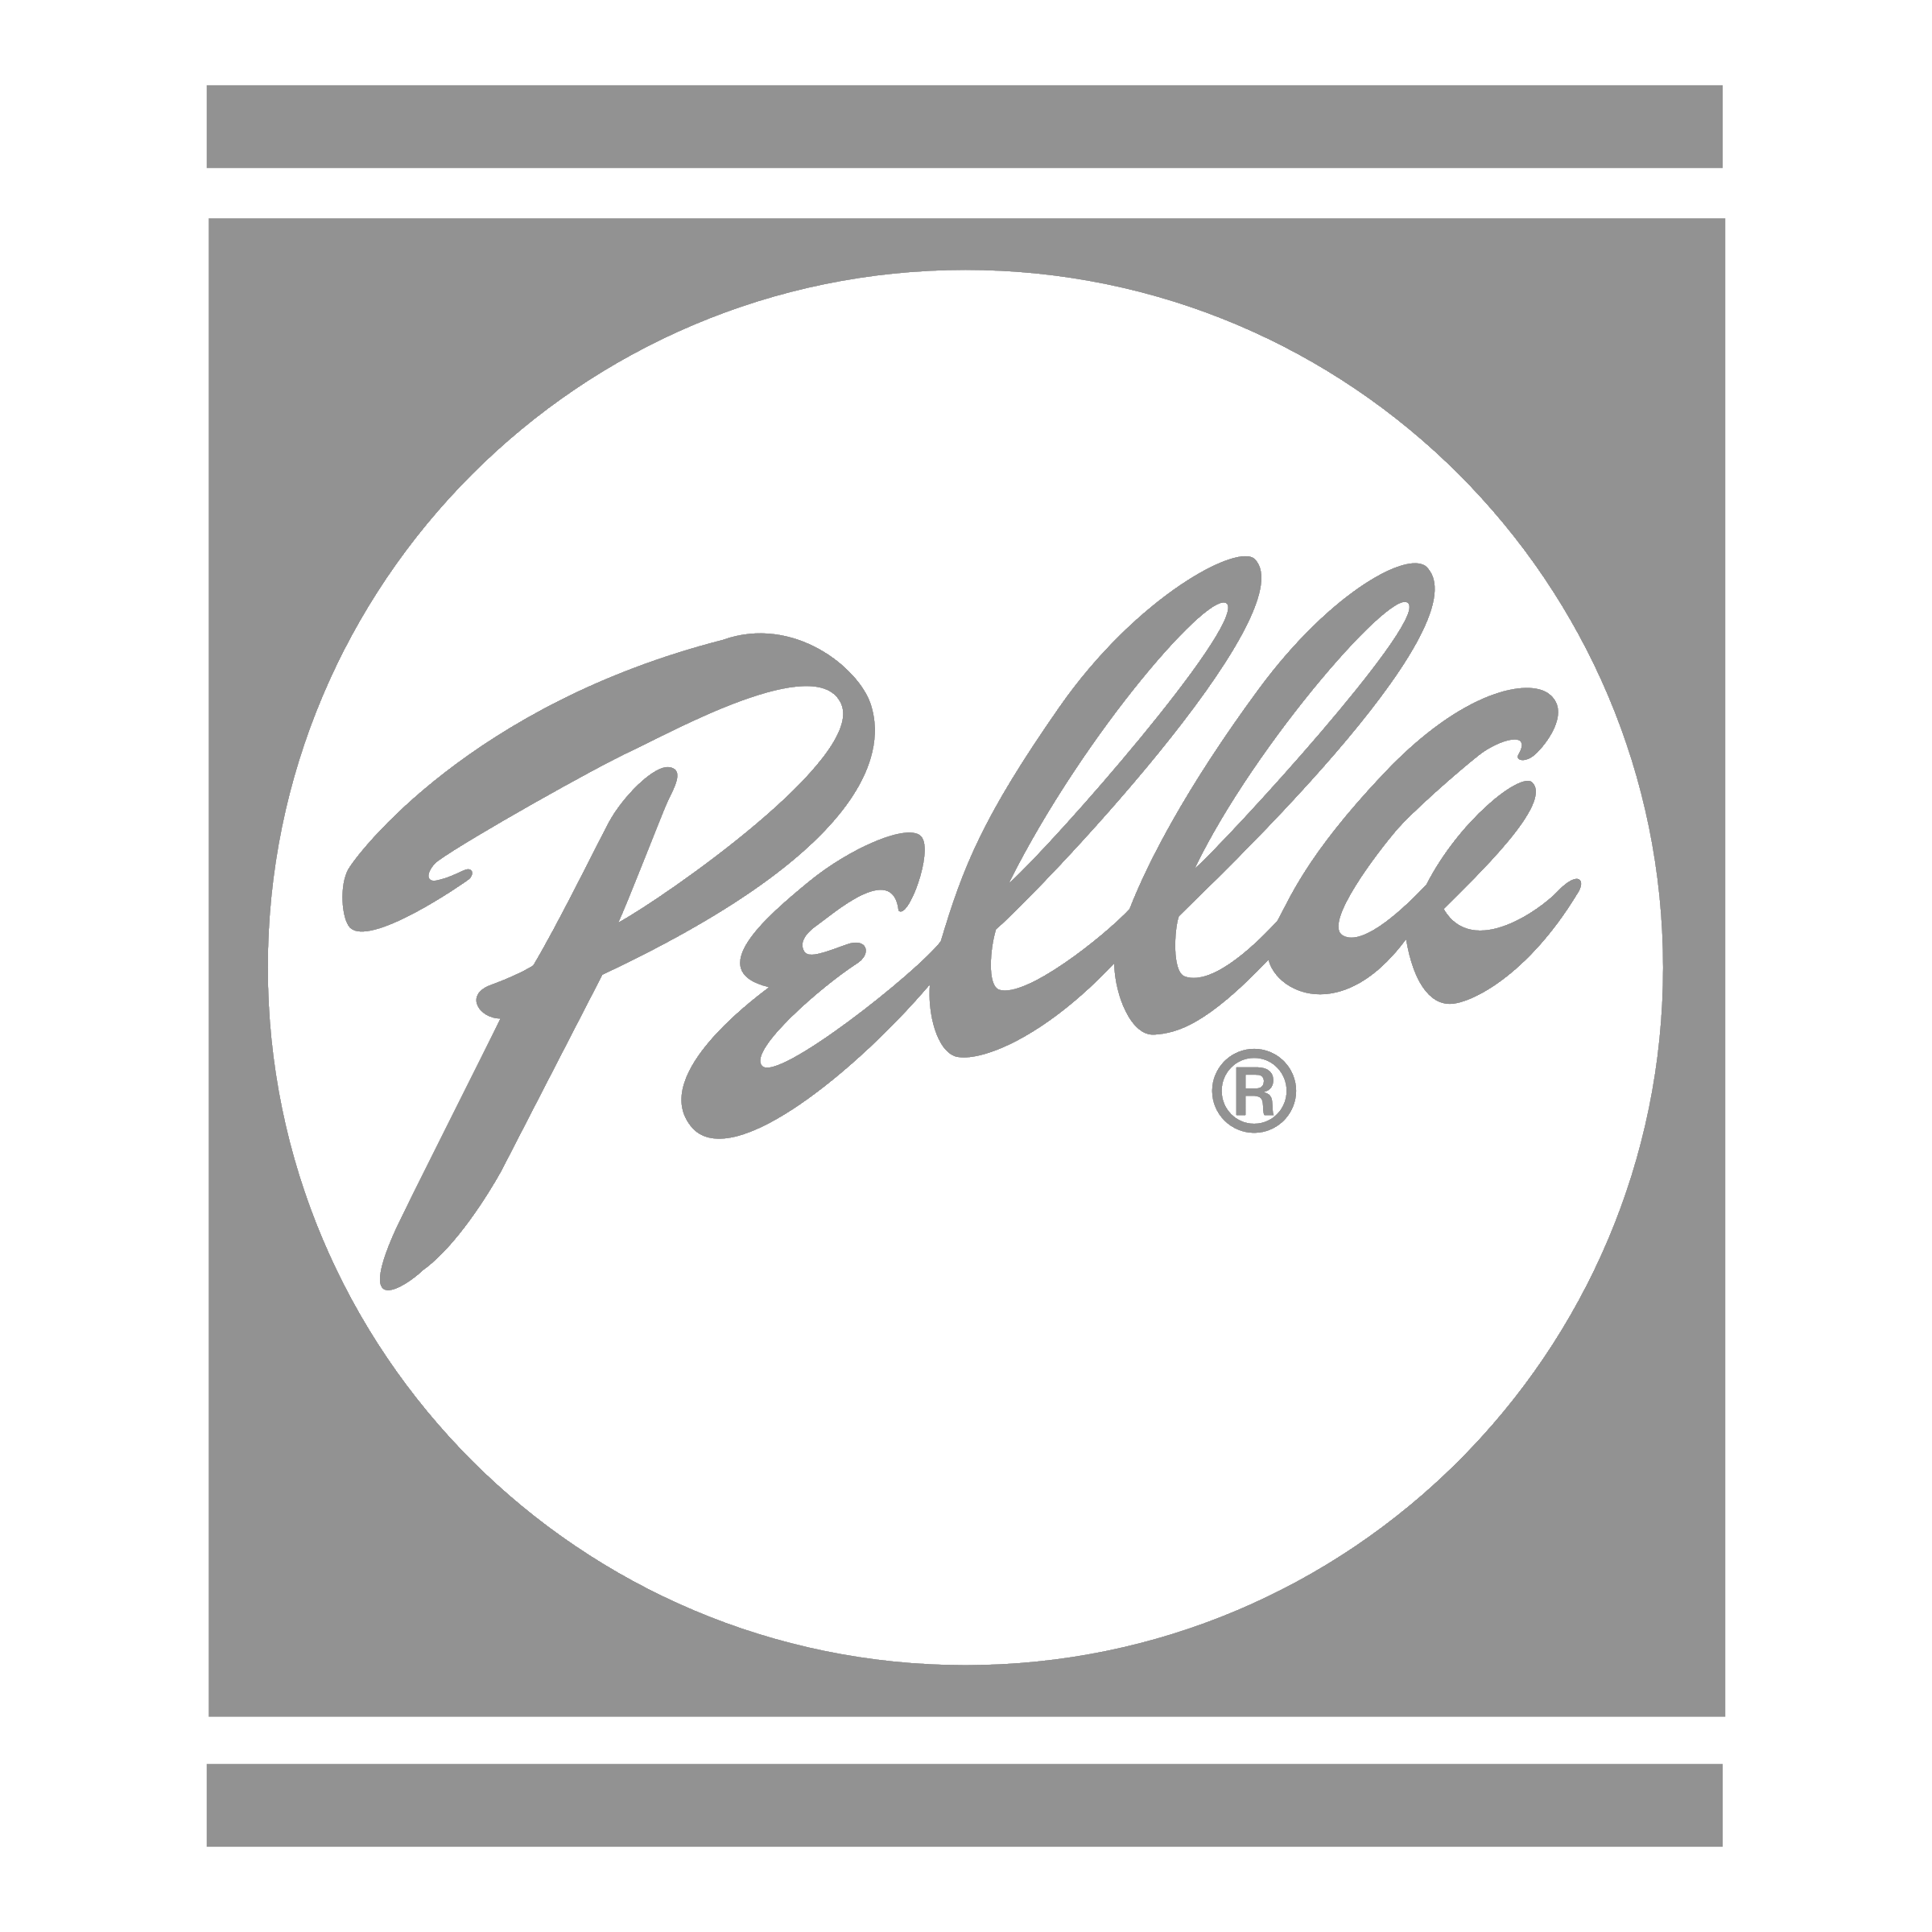 pella-1-logo-png-transparent.png